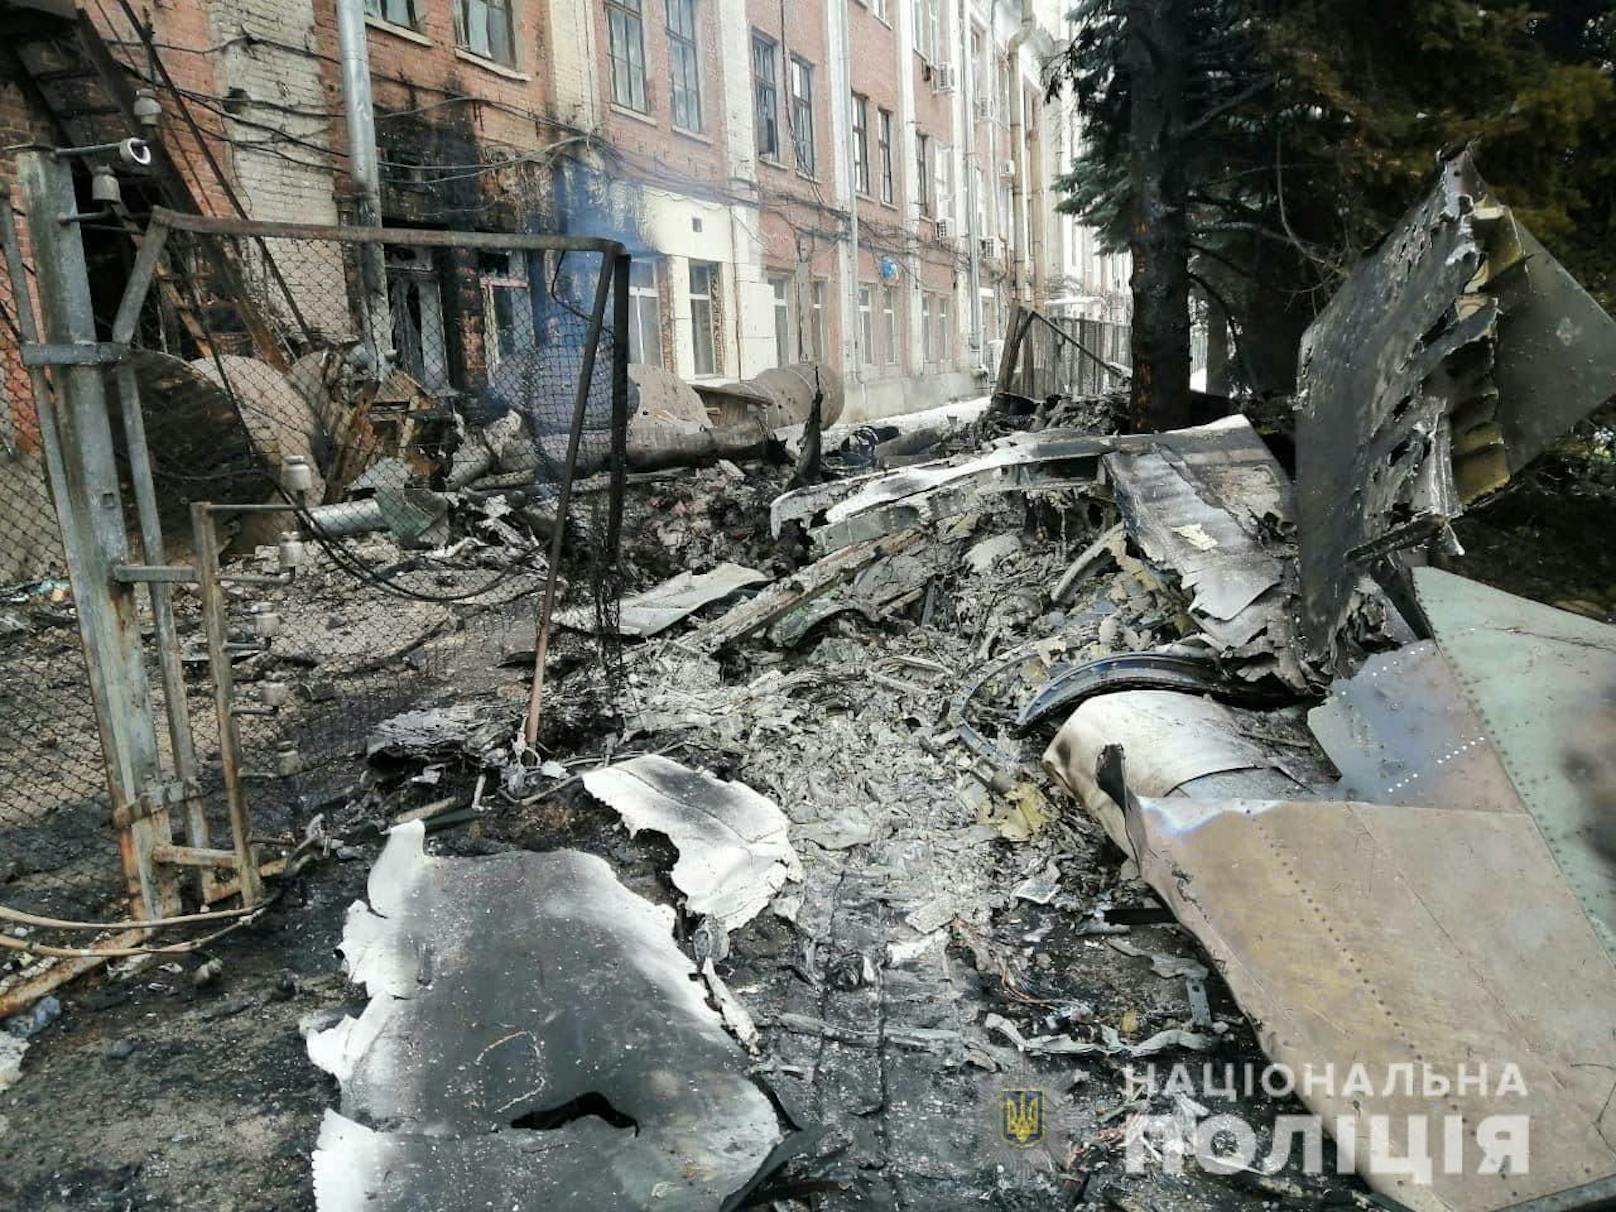 Die Trümmer des abgeschossenen, mutmaßlich russischen Jets mitten in Charkiw (7. März 2022).